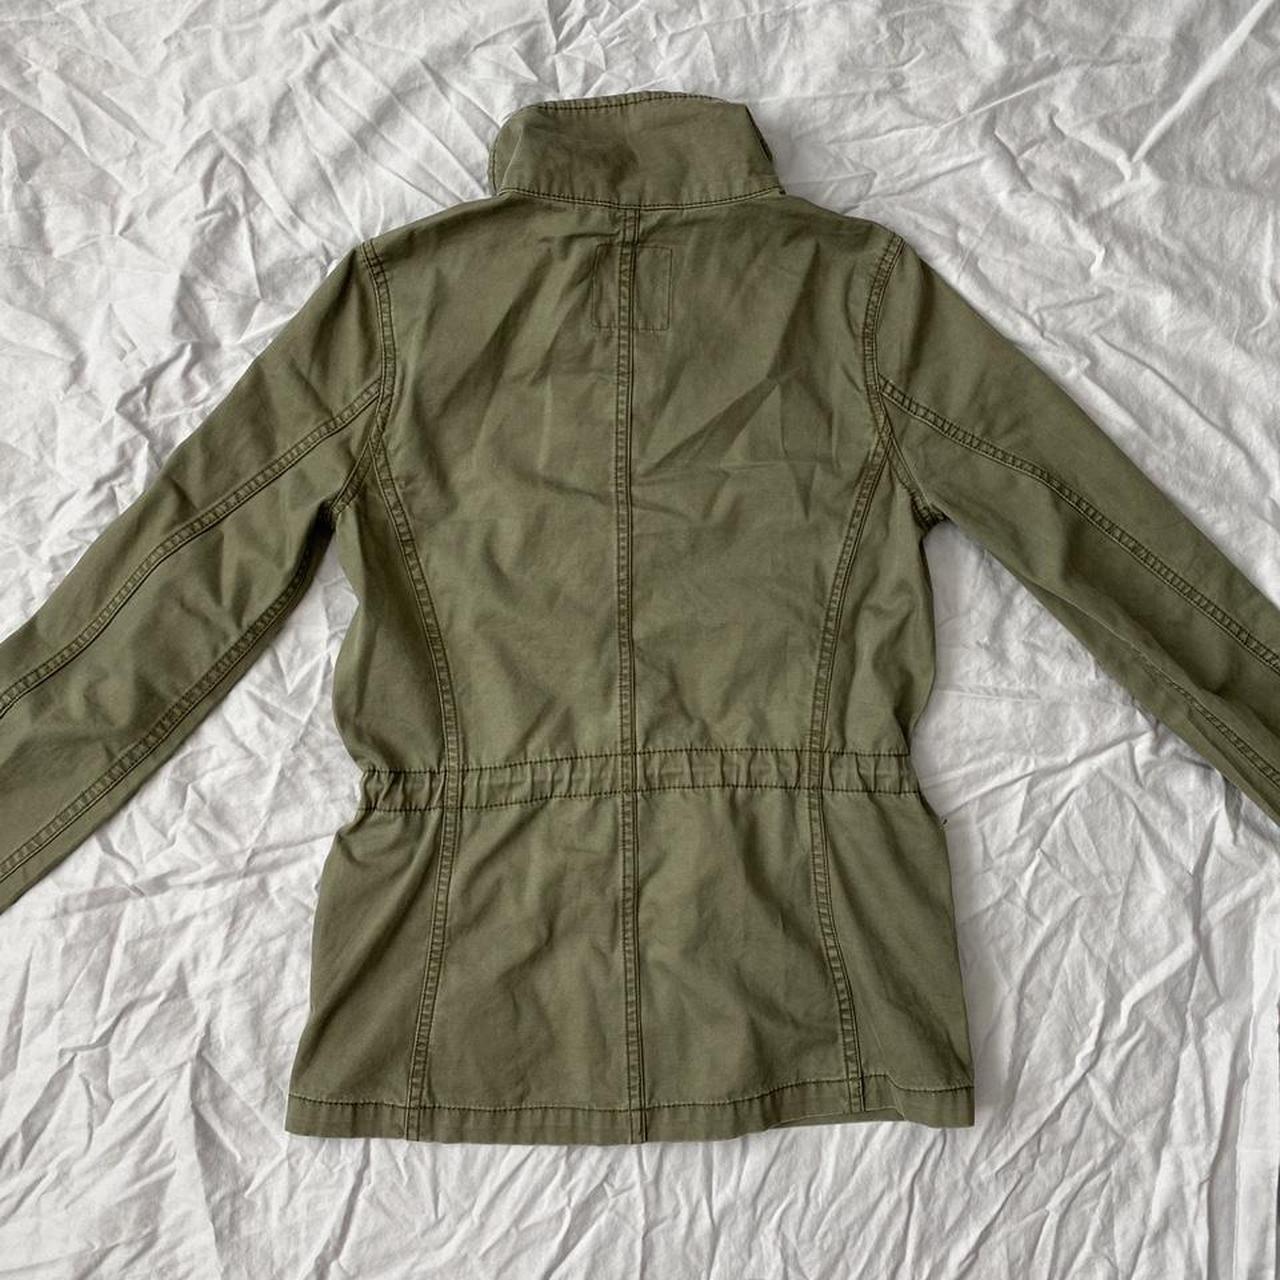 Madewell passage jacket in desert olive color. Size... - Depop